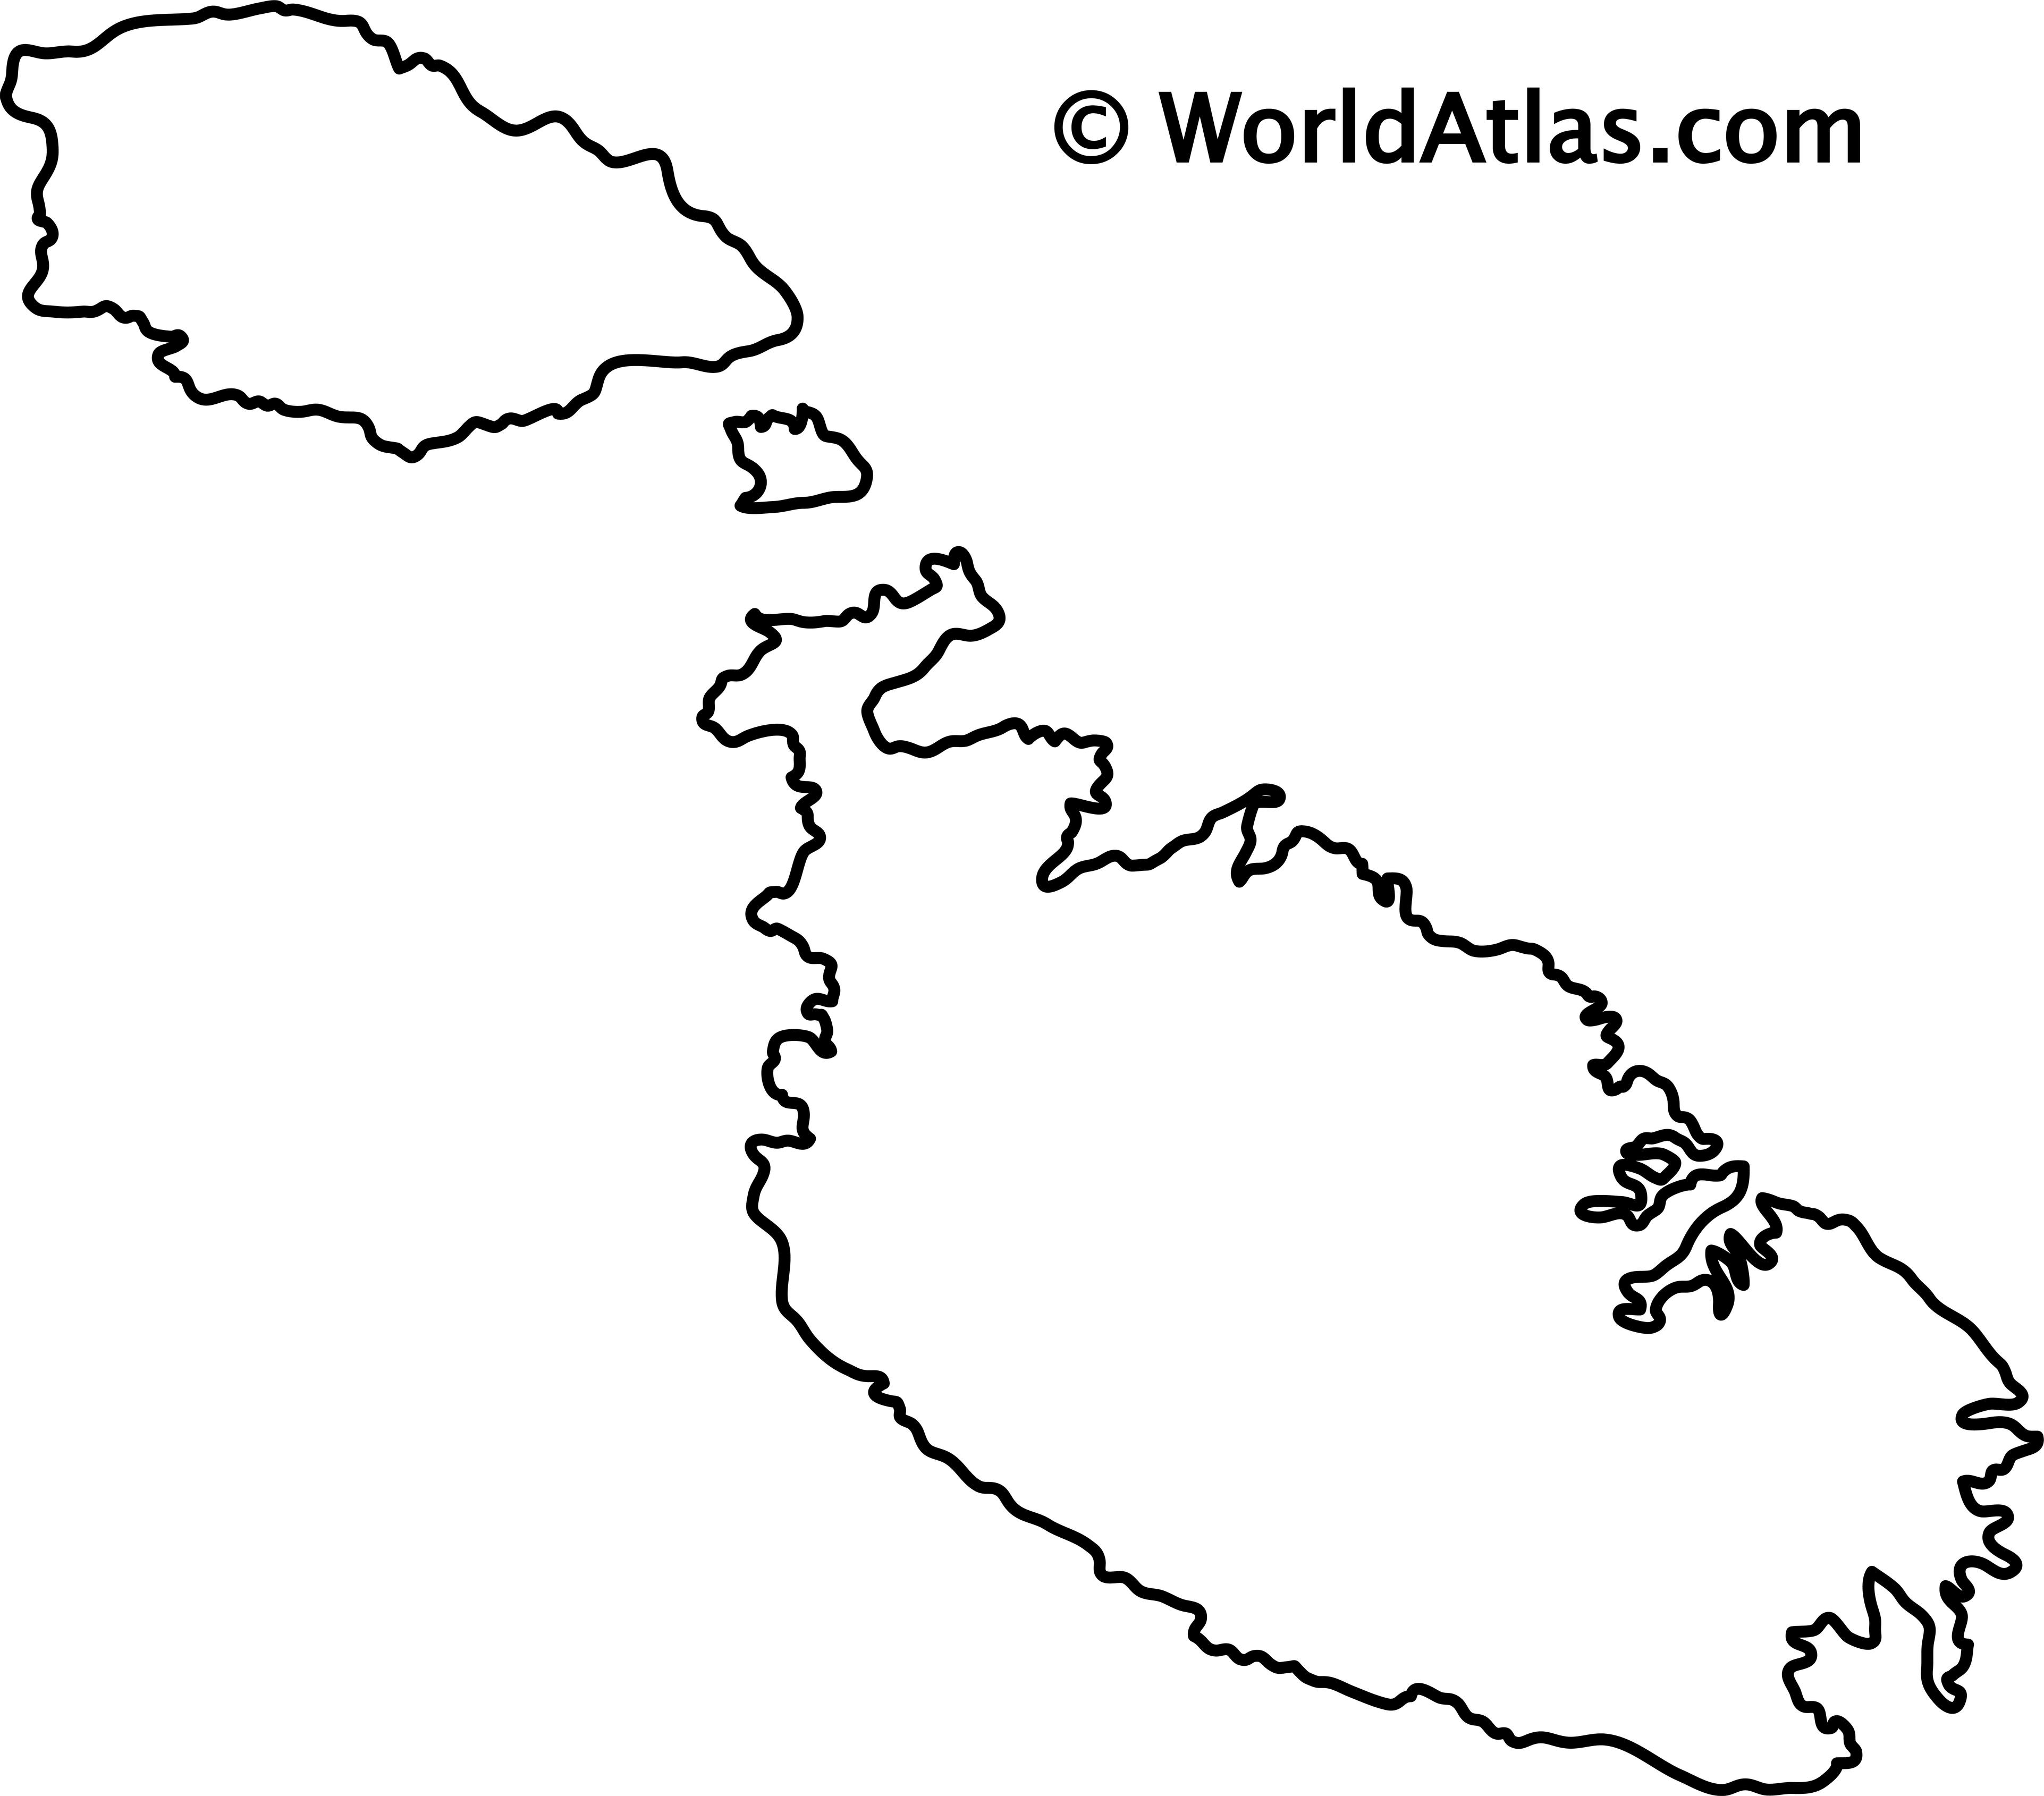 blank world atlas map. lank world atlas map. world